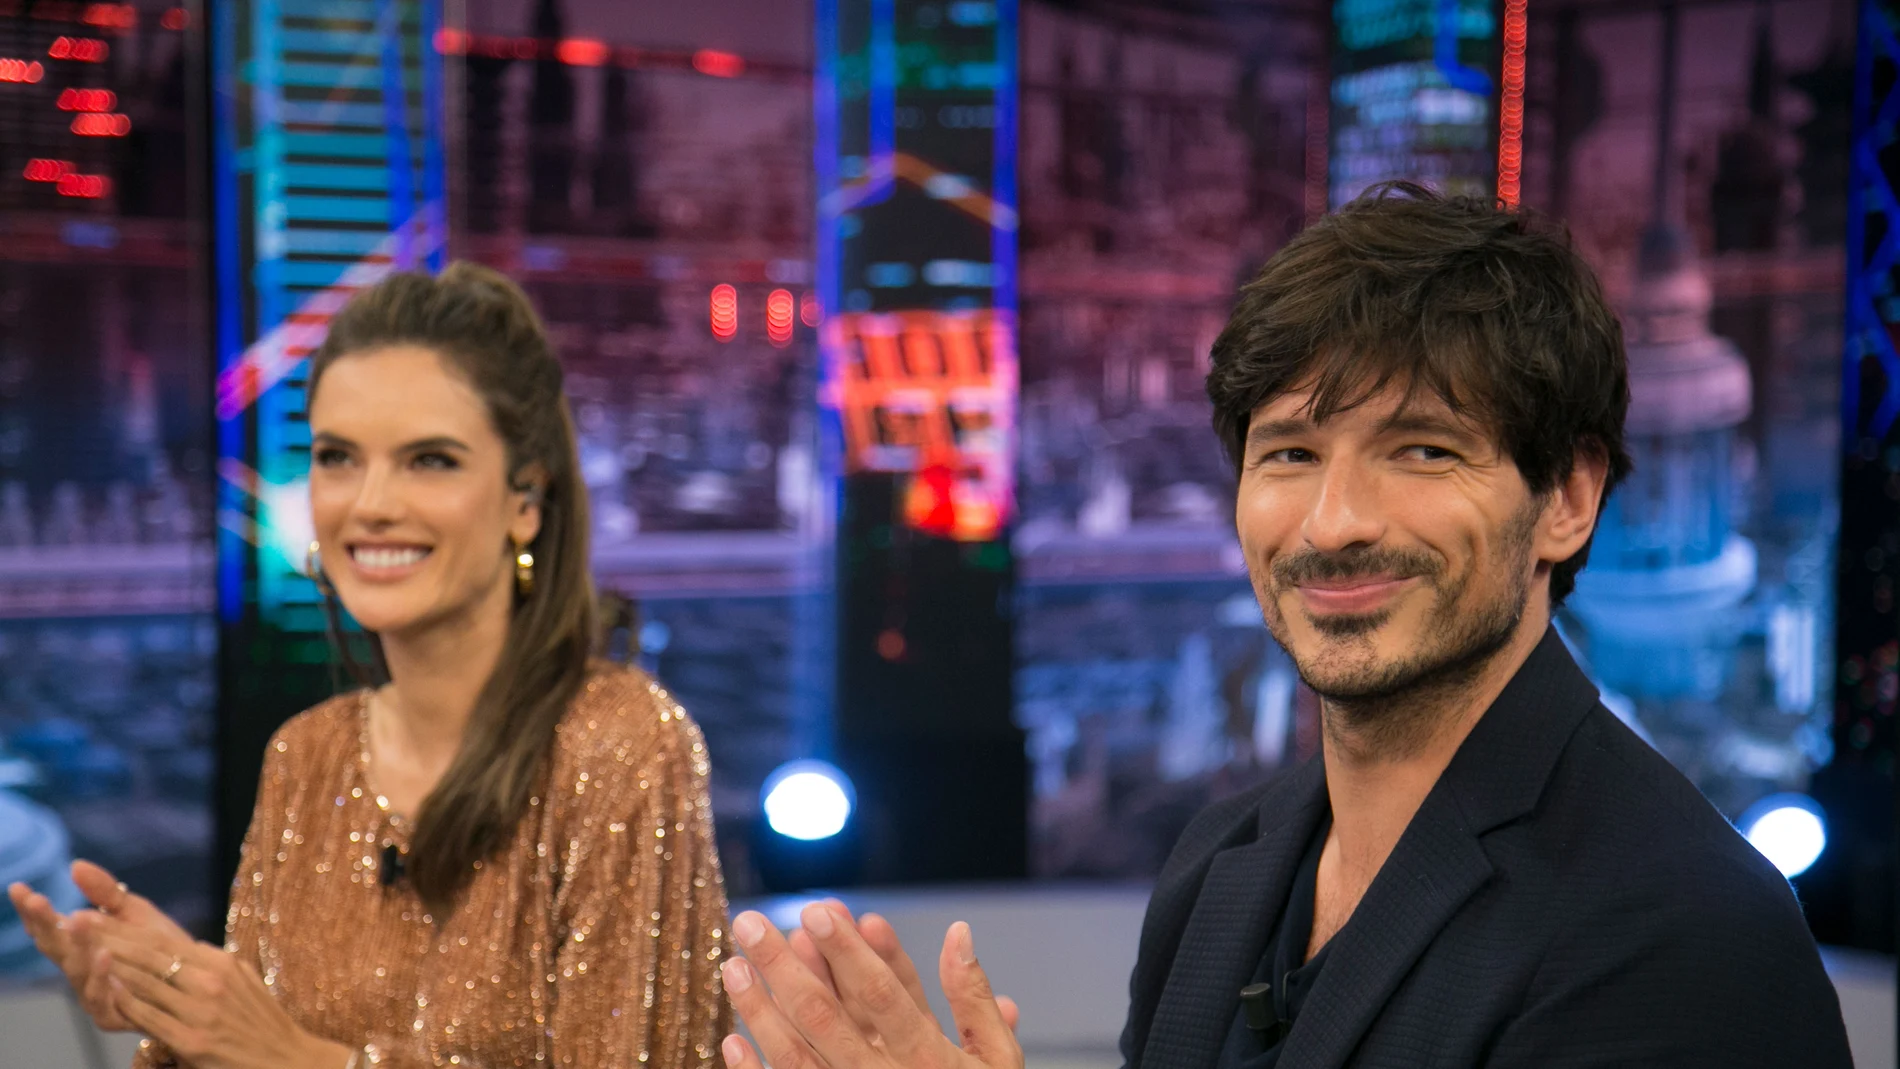 Andrés Velencoso y Alessandra Ambrosio explican su experiencia como actores